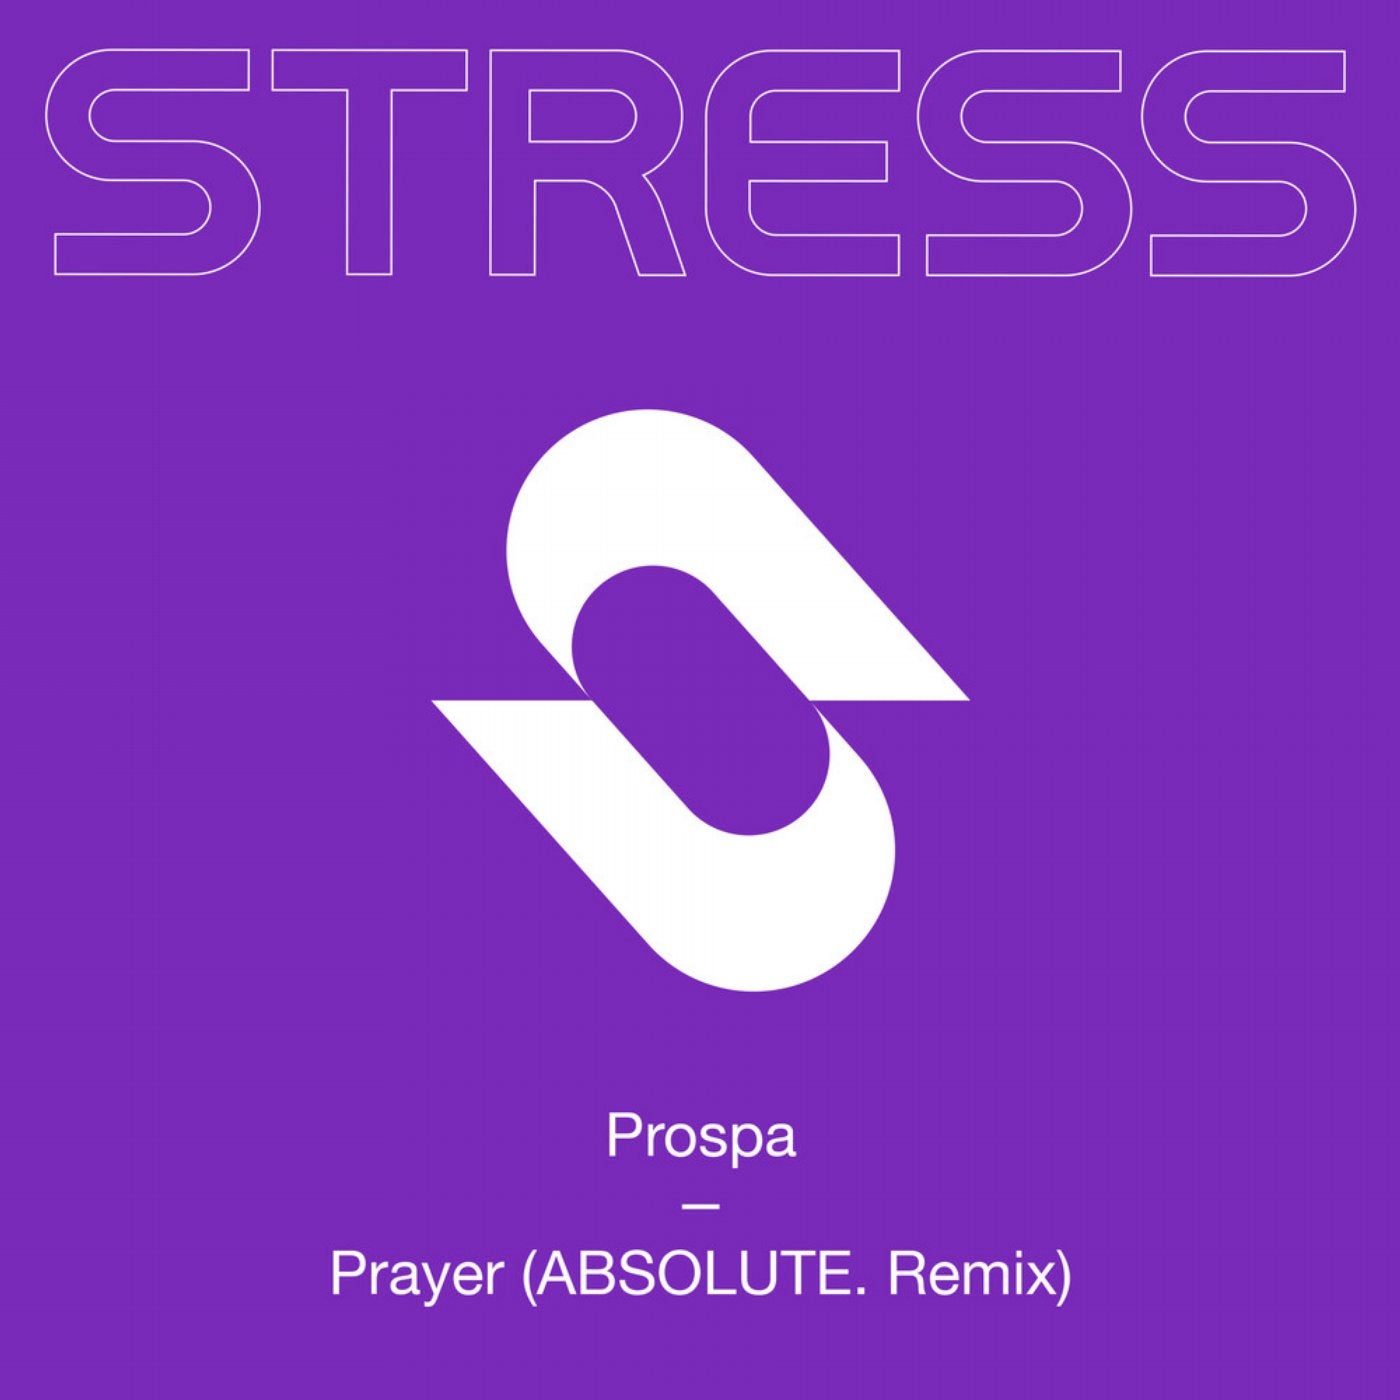 Prayer (ABSOLUTE. Remix)